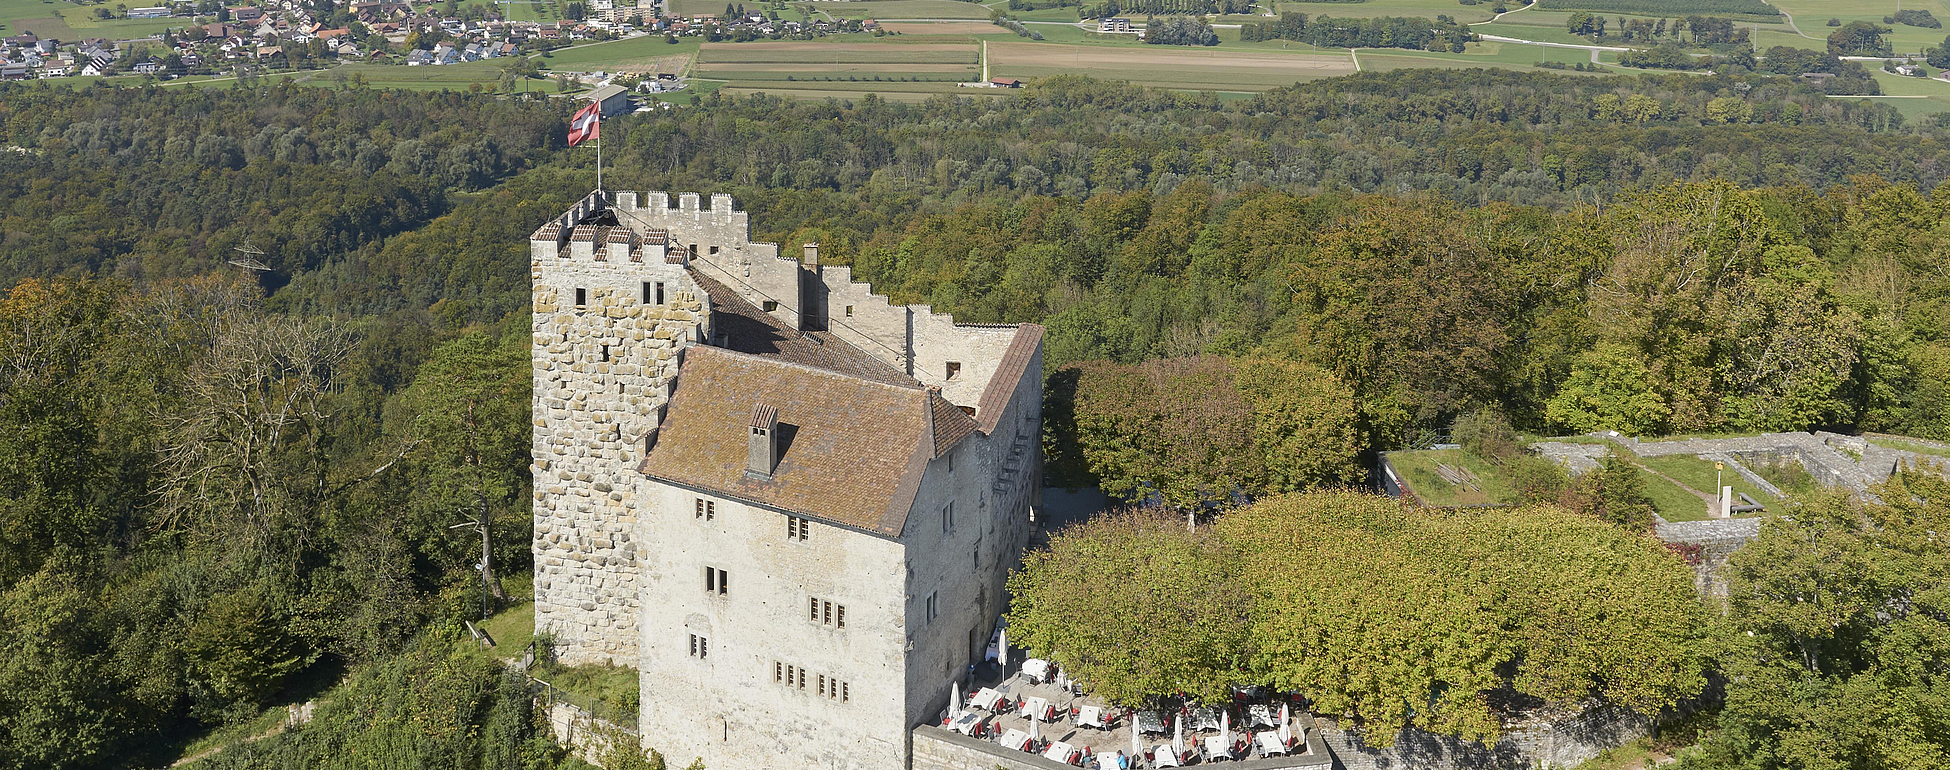 Castello di Habsburg